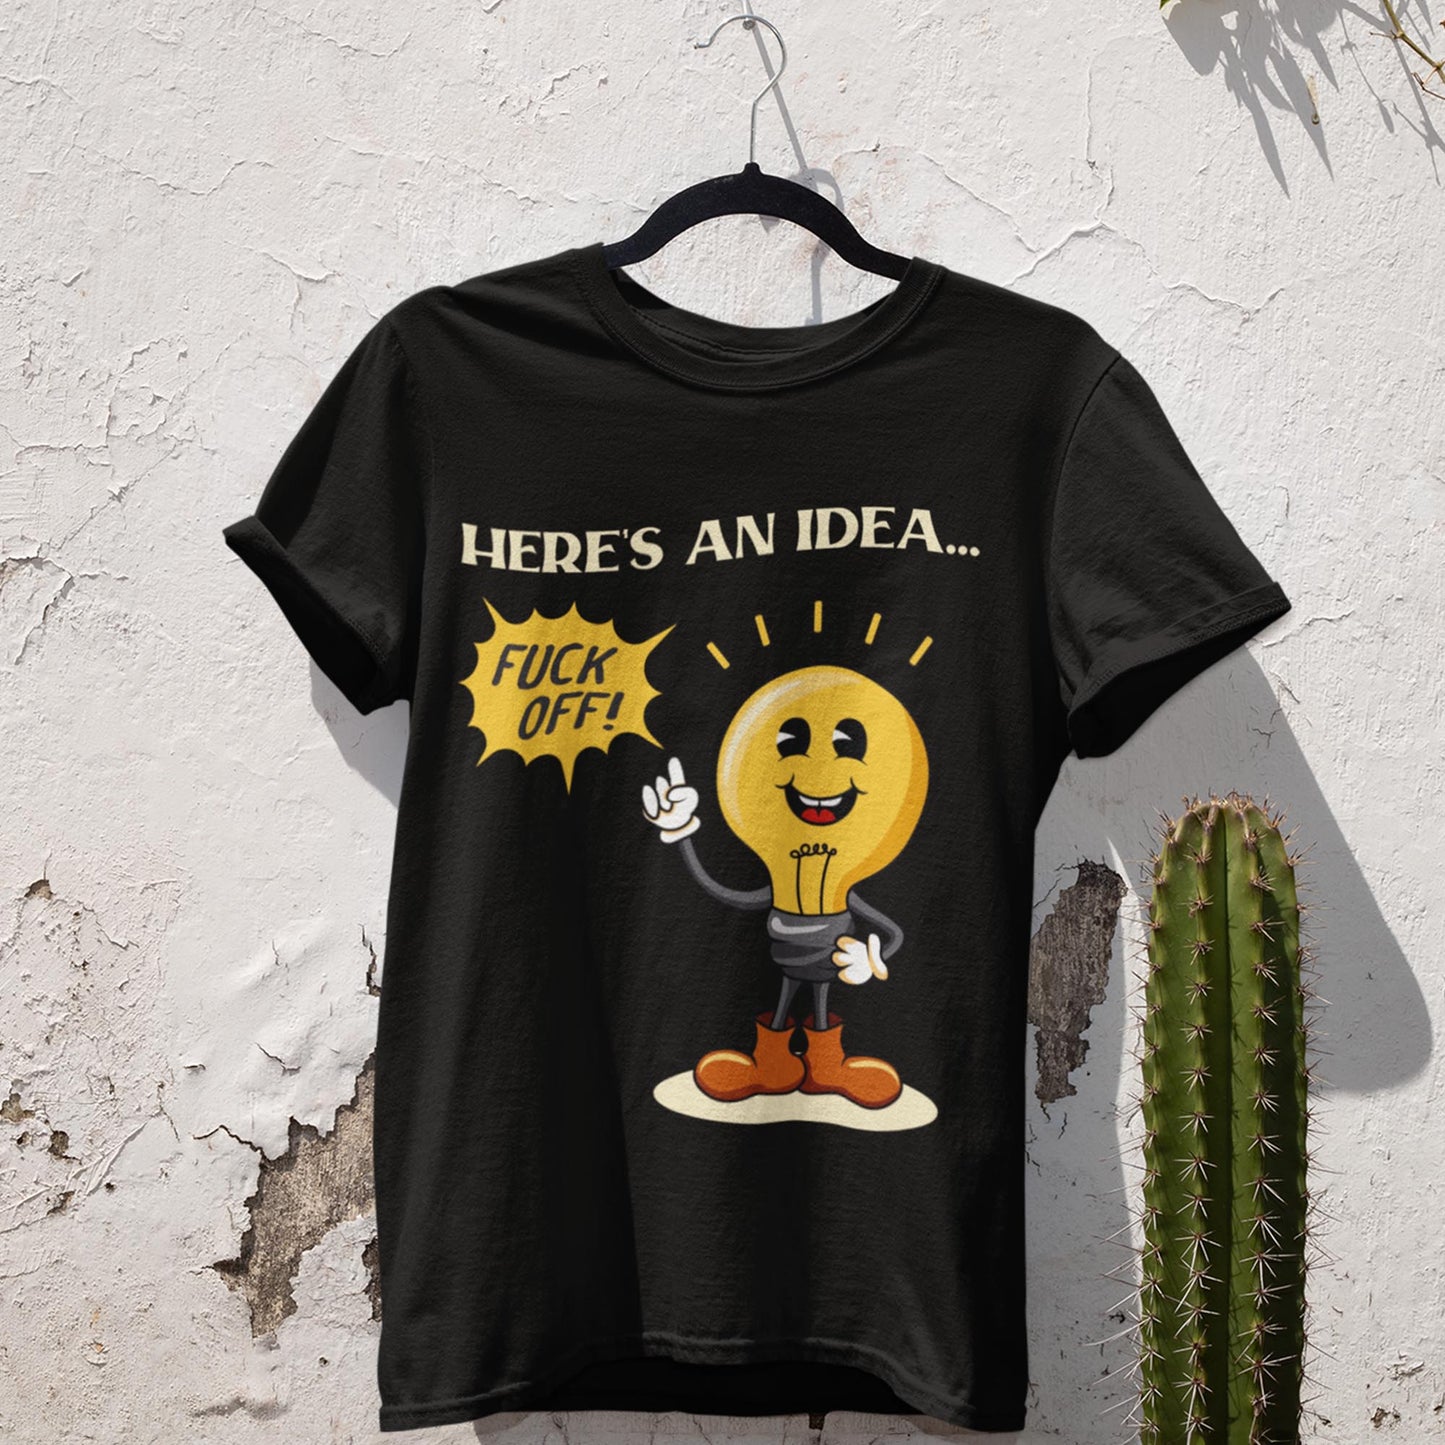 Here's An Idea... Fuck Off! Unisex T-Shirt